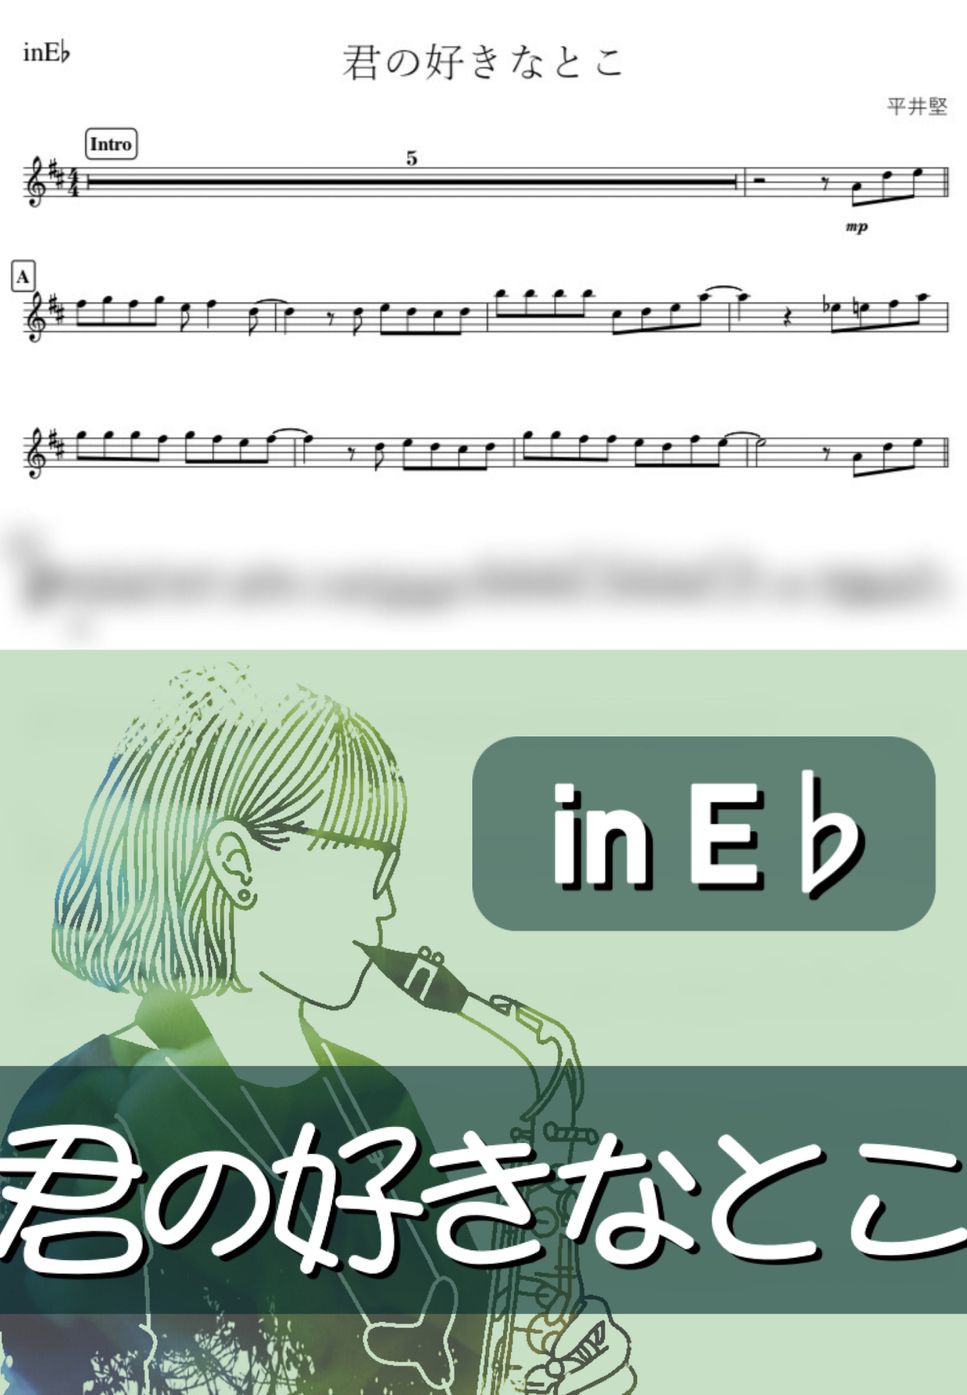 平井堅 - 君の好きなとこ (E♭) by kanamusic